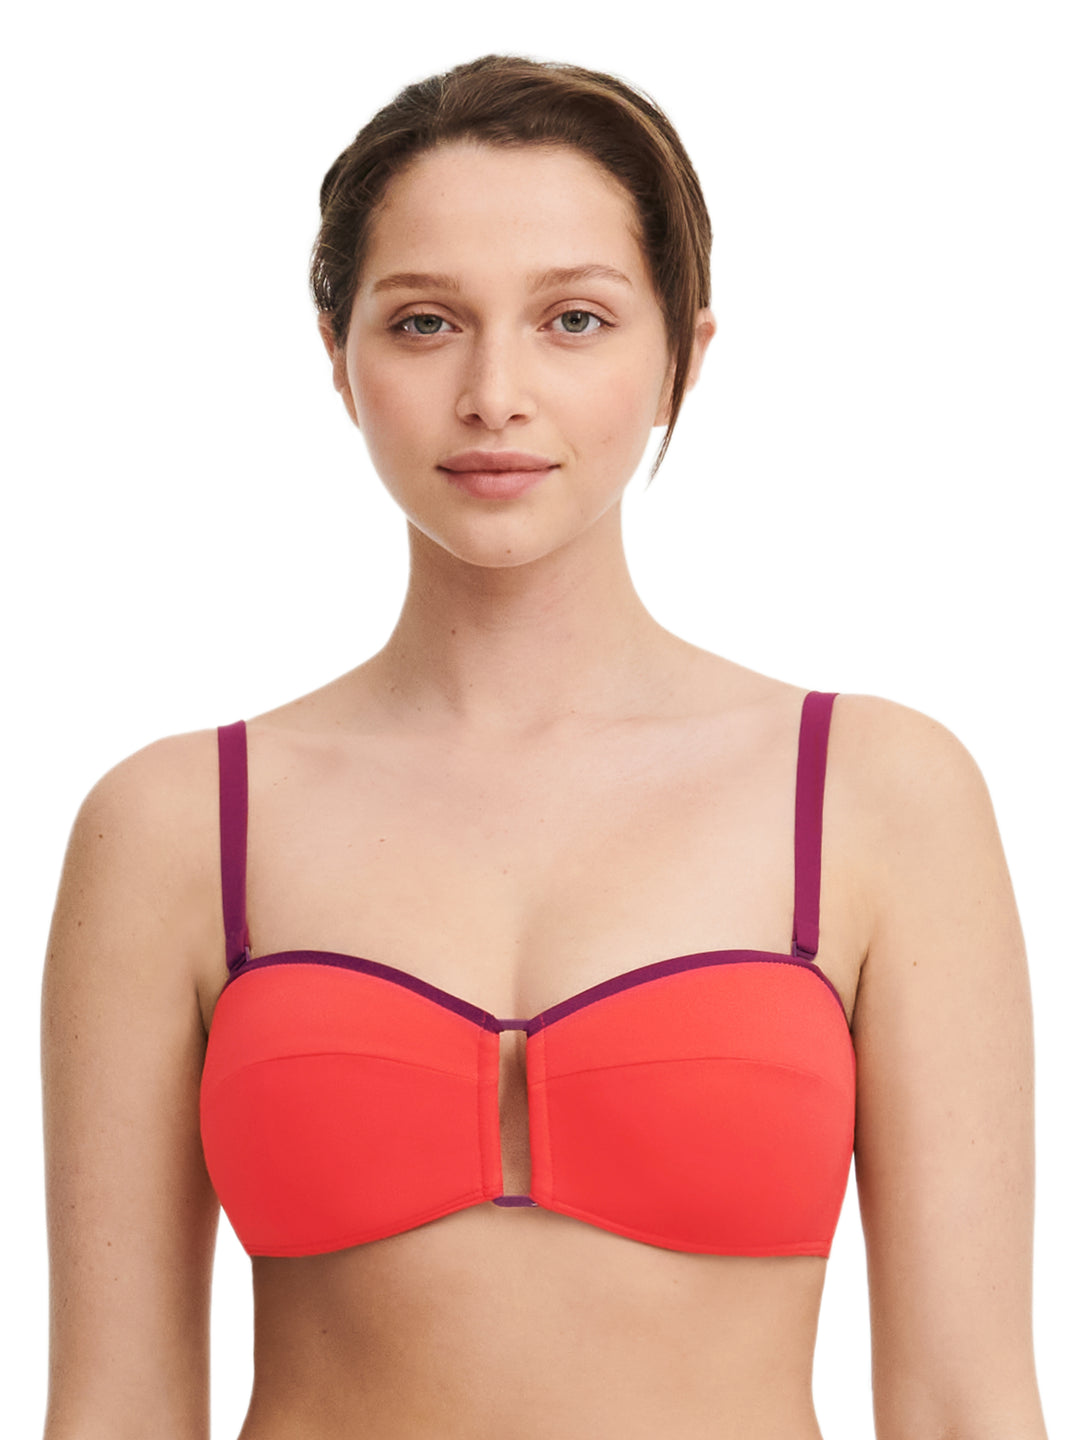 Costumi da bagno Chantelle - Autentico bikini a fascia senza ferretto, rosso/arancione